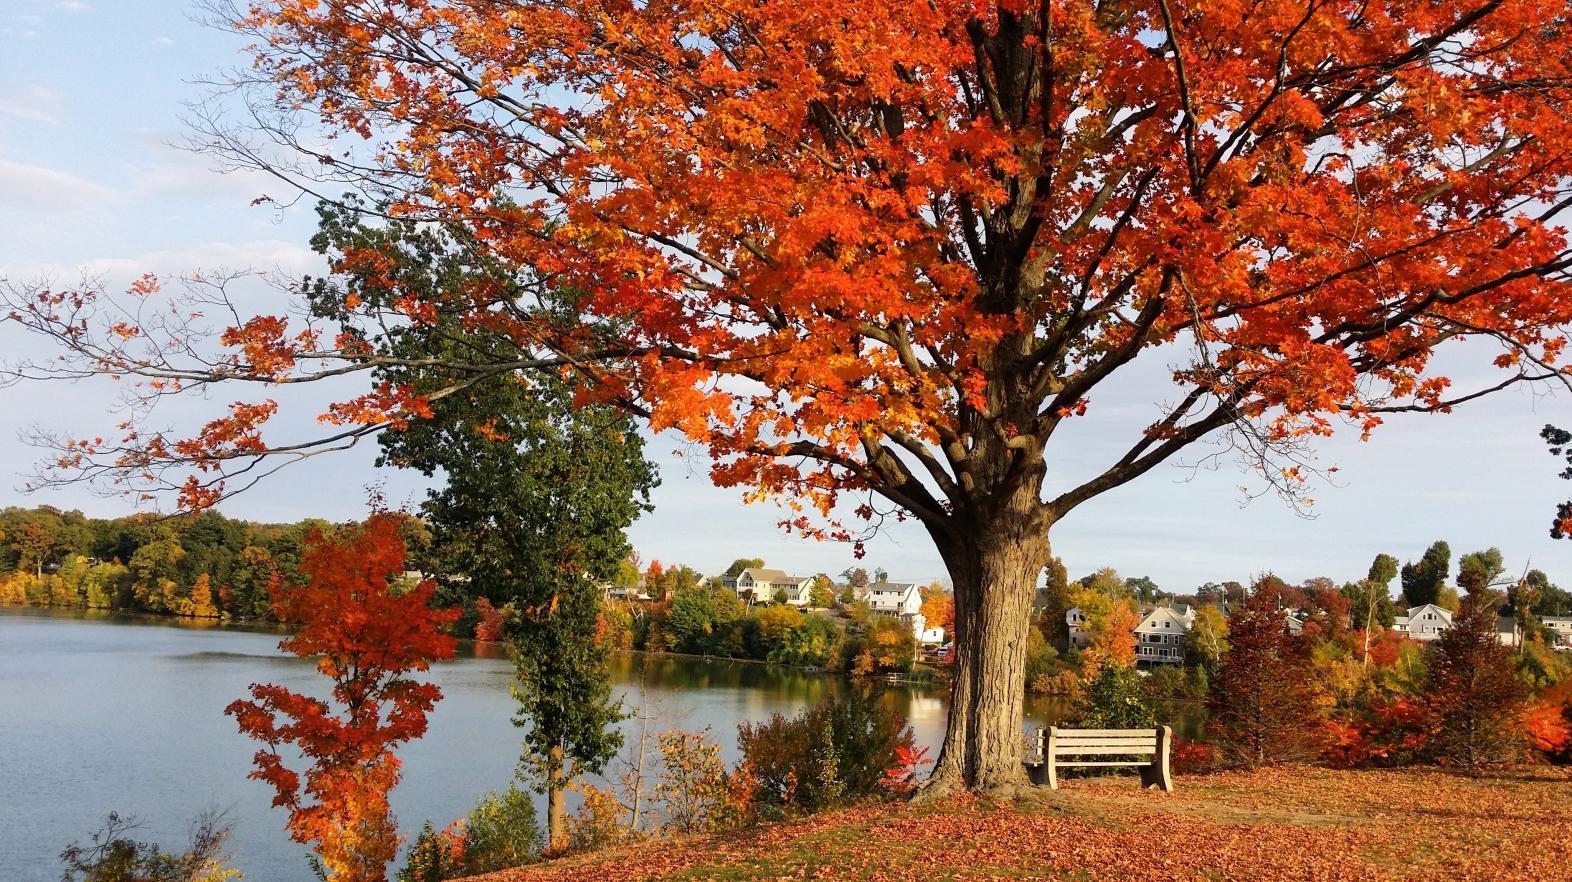 Fall foliage at Springfield College on Lake Massasoit